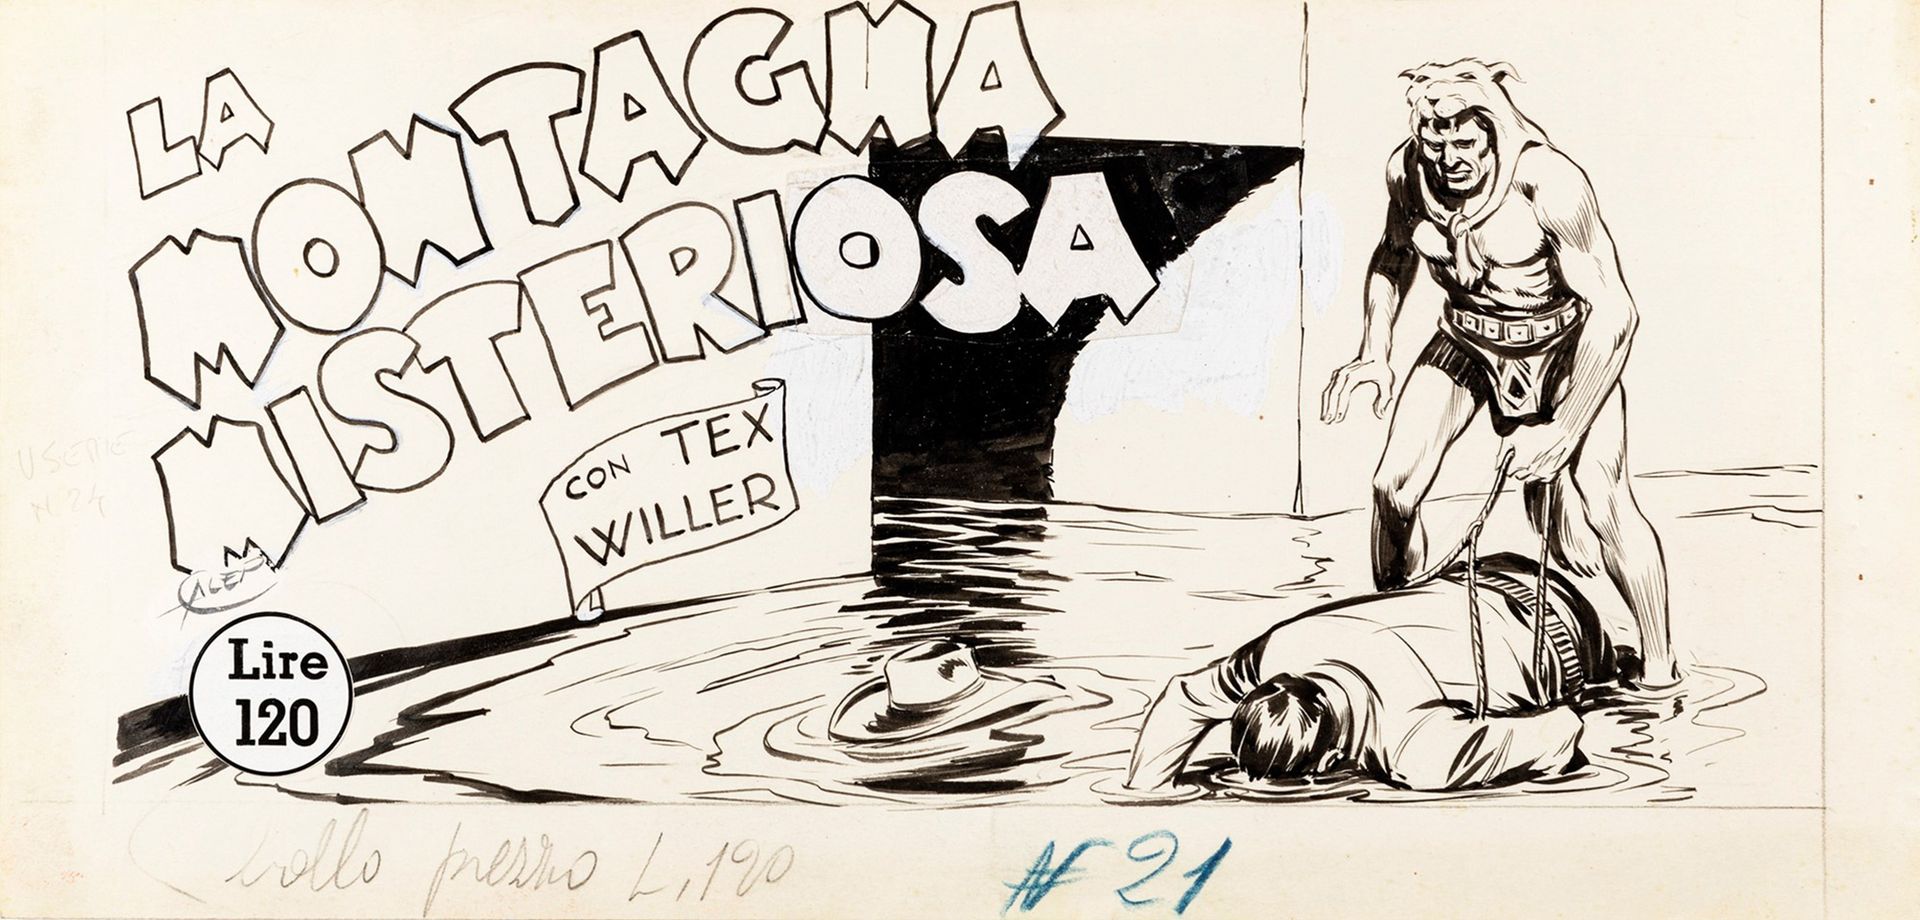 Aurelio Galleppini Tex - La montagna misteriosa, 1952

lápiz y tinta sobre cartó&hellip;